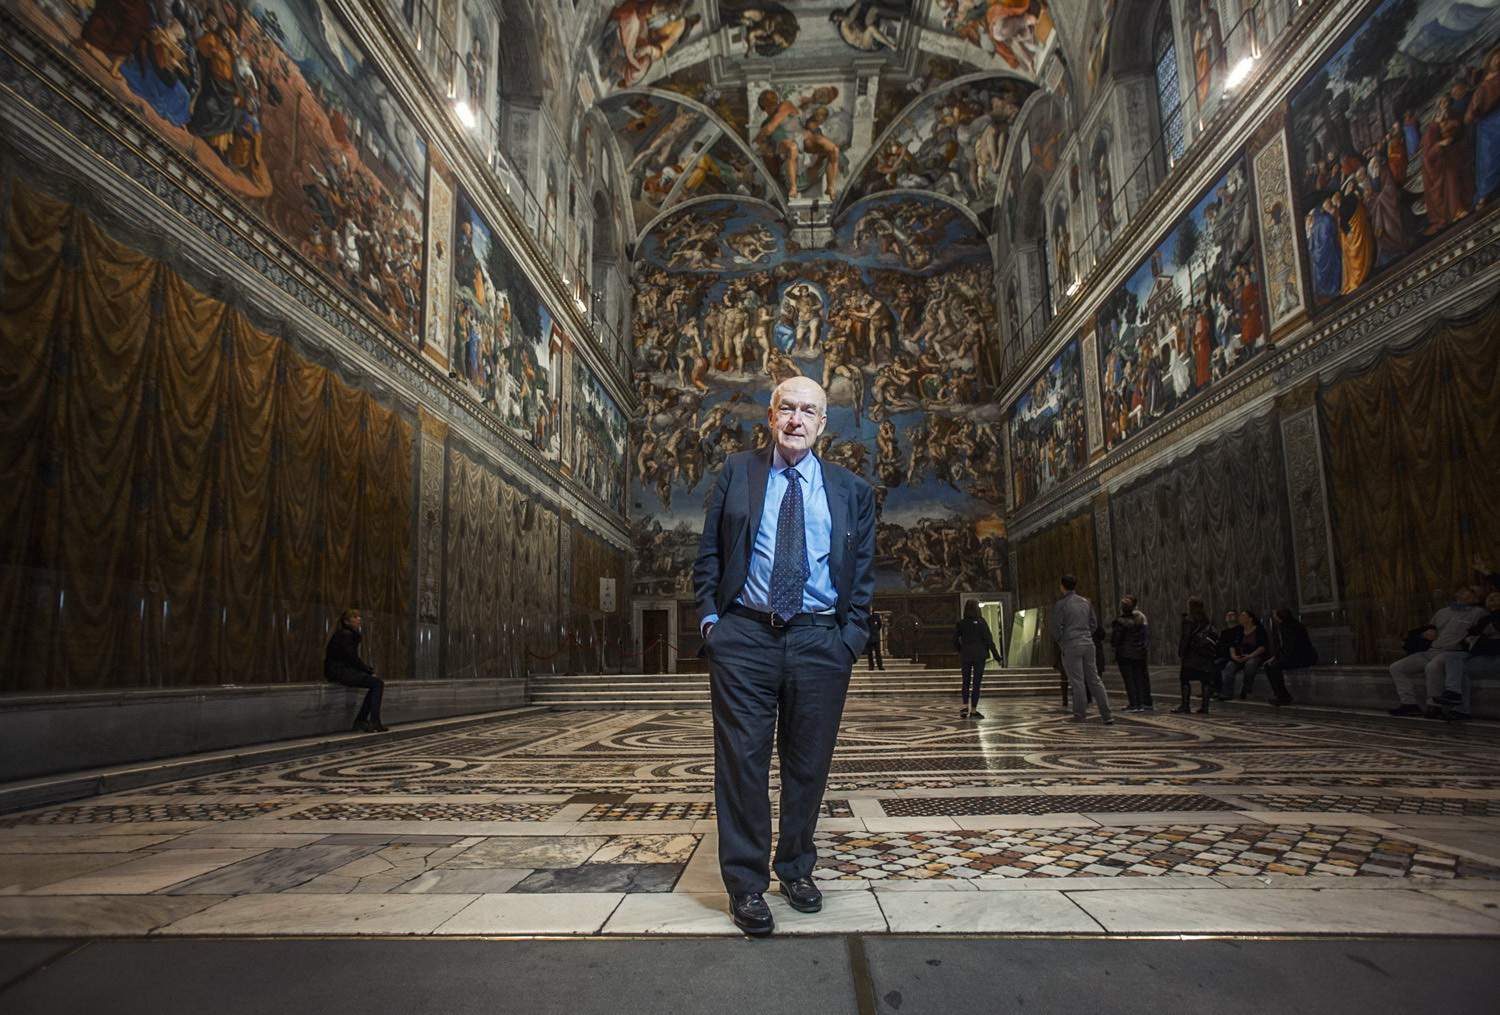 Arte in tv dall'8 al 14 giugno: Christo, i Musei Vaticani raccontati da Paolucci, i nazisti e l'arte rubata